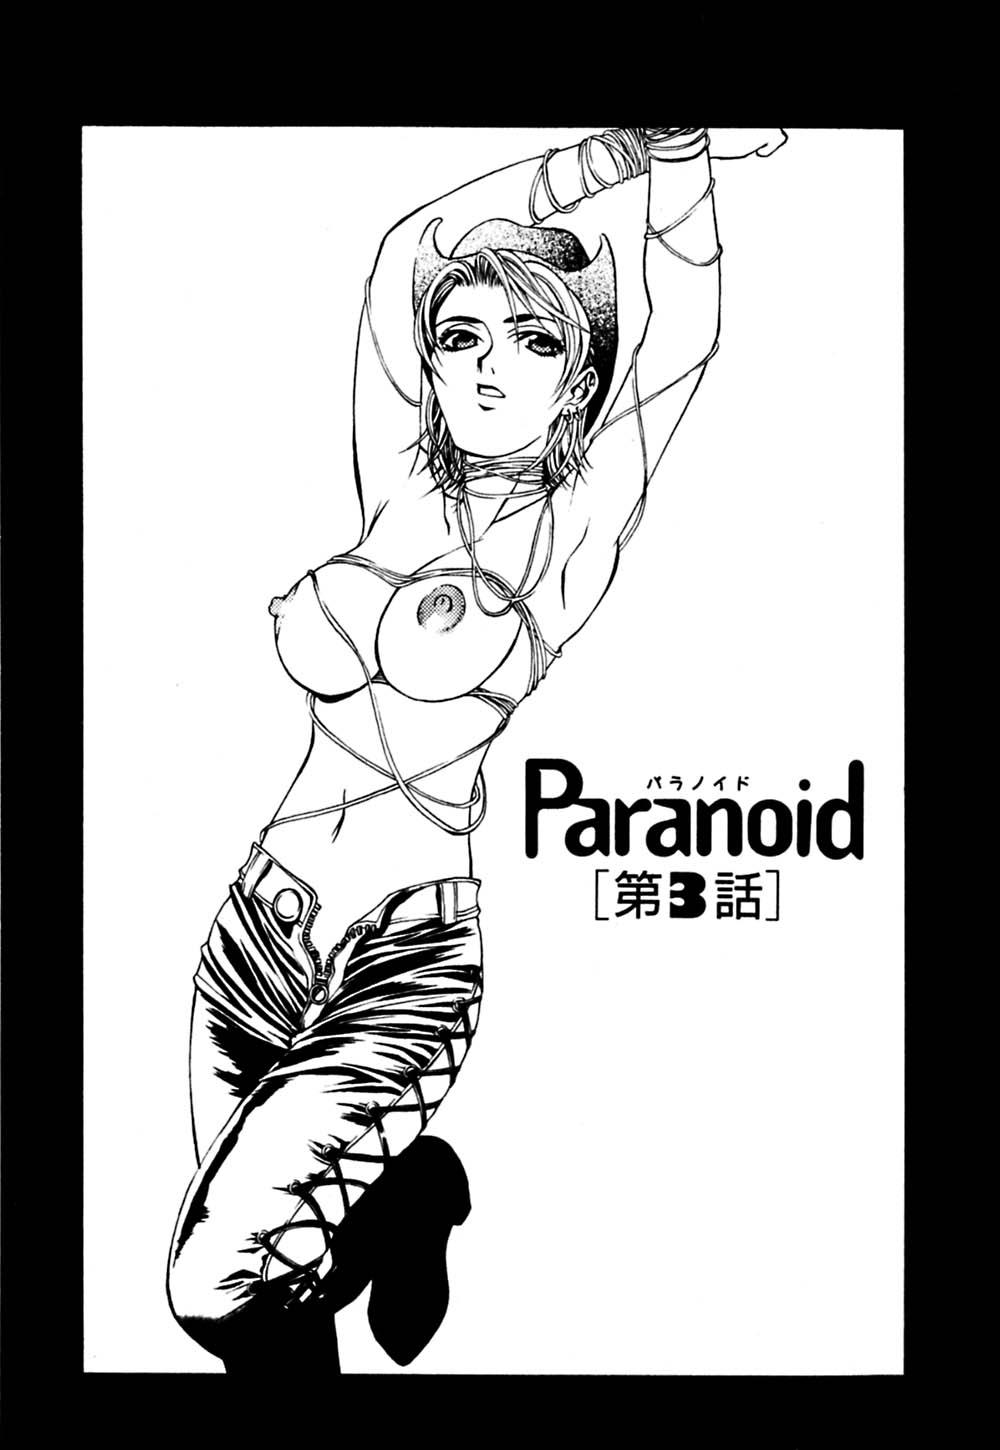 Paranoid 55